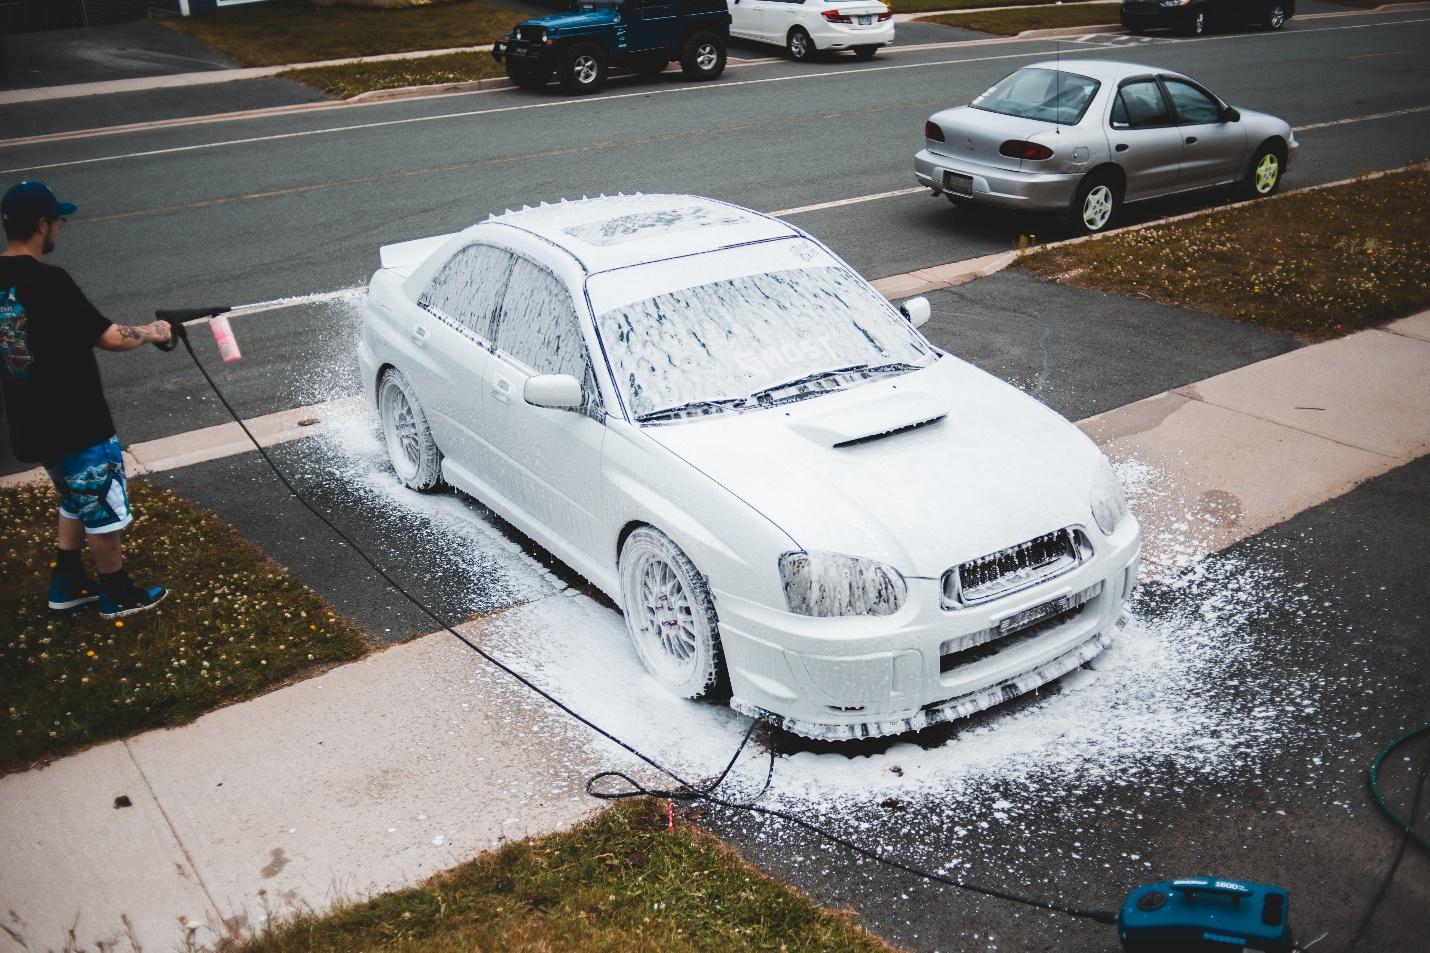 A person sprays foam using a pressure washer on a Subaru in a DIY Car Wash.